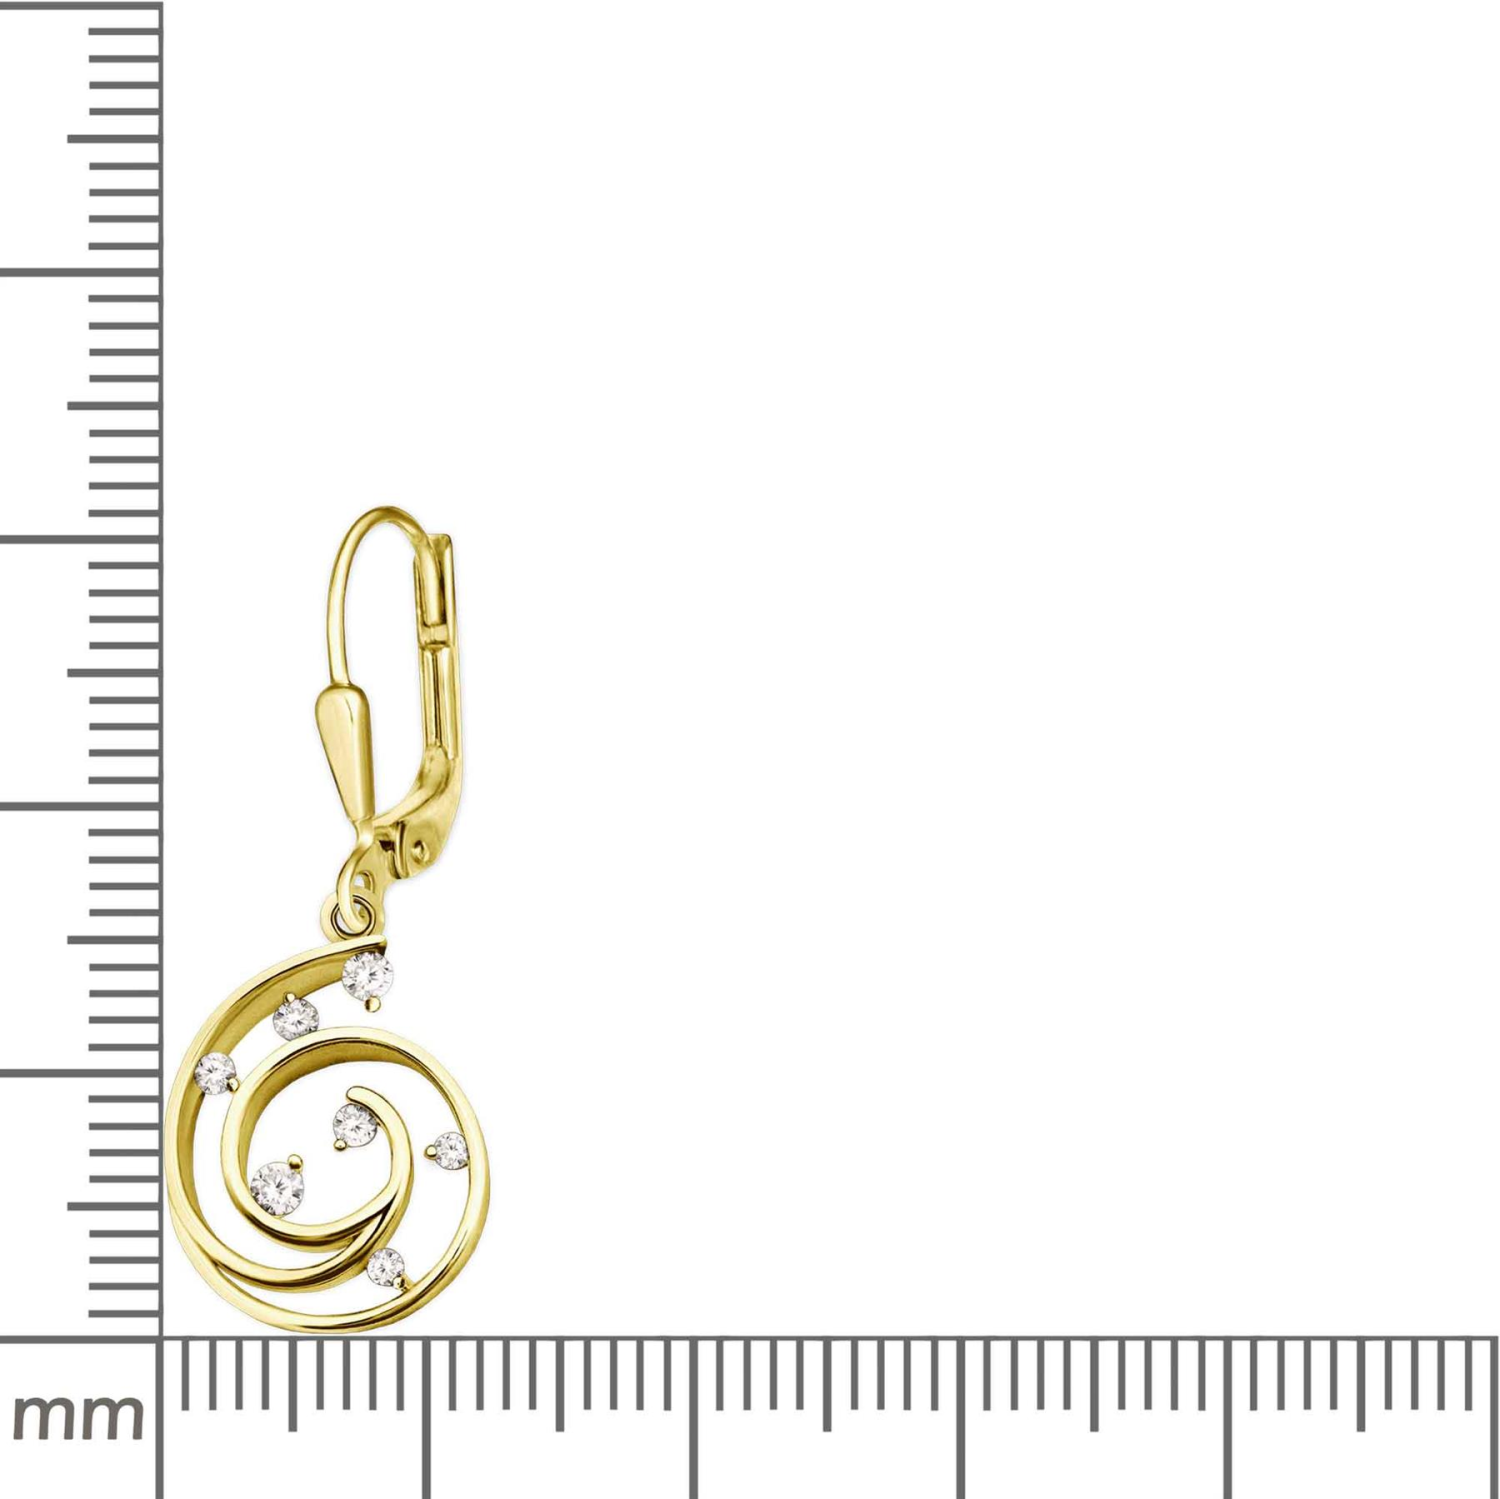 Goldene Ohrringe Kringel Spirale viele Zirkonias weiß Echt Silber 925